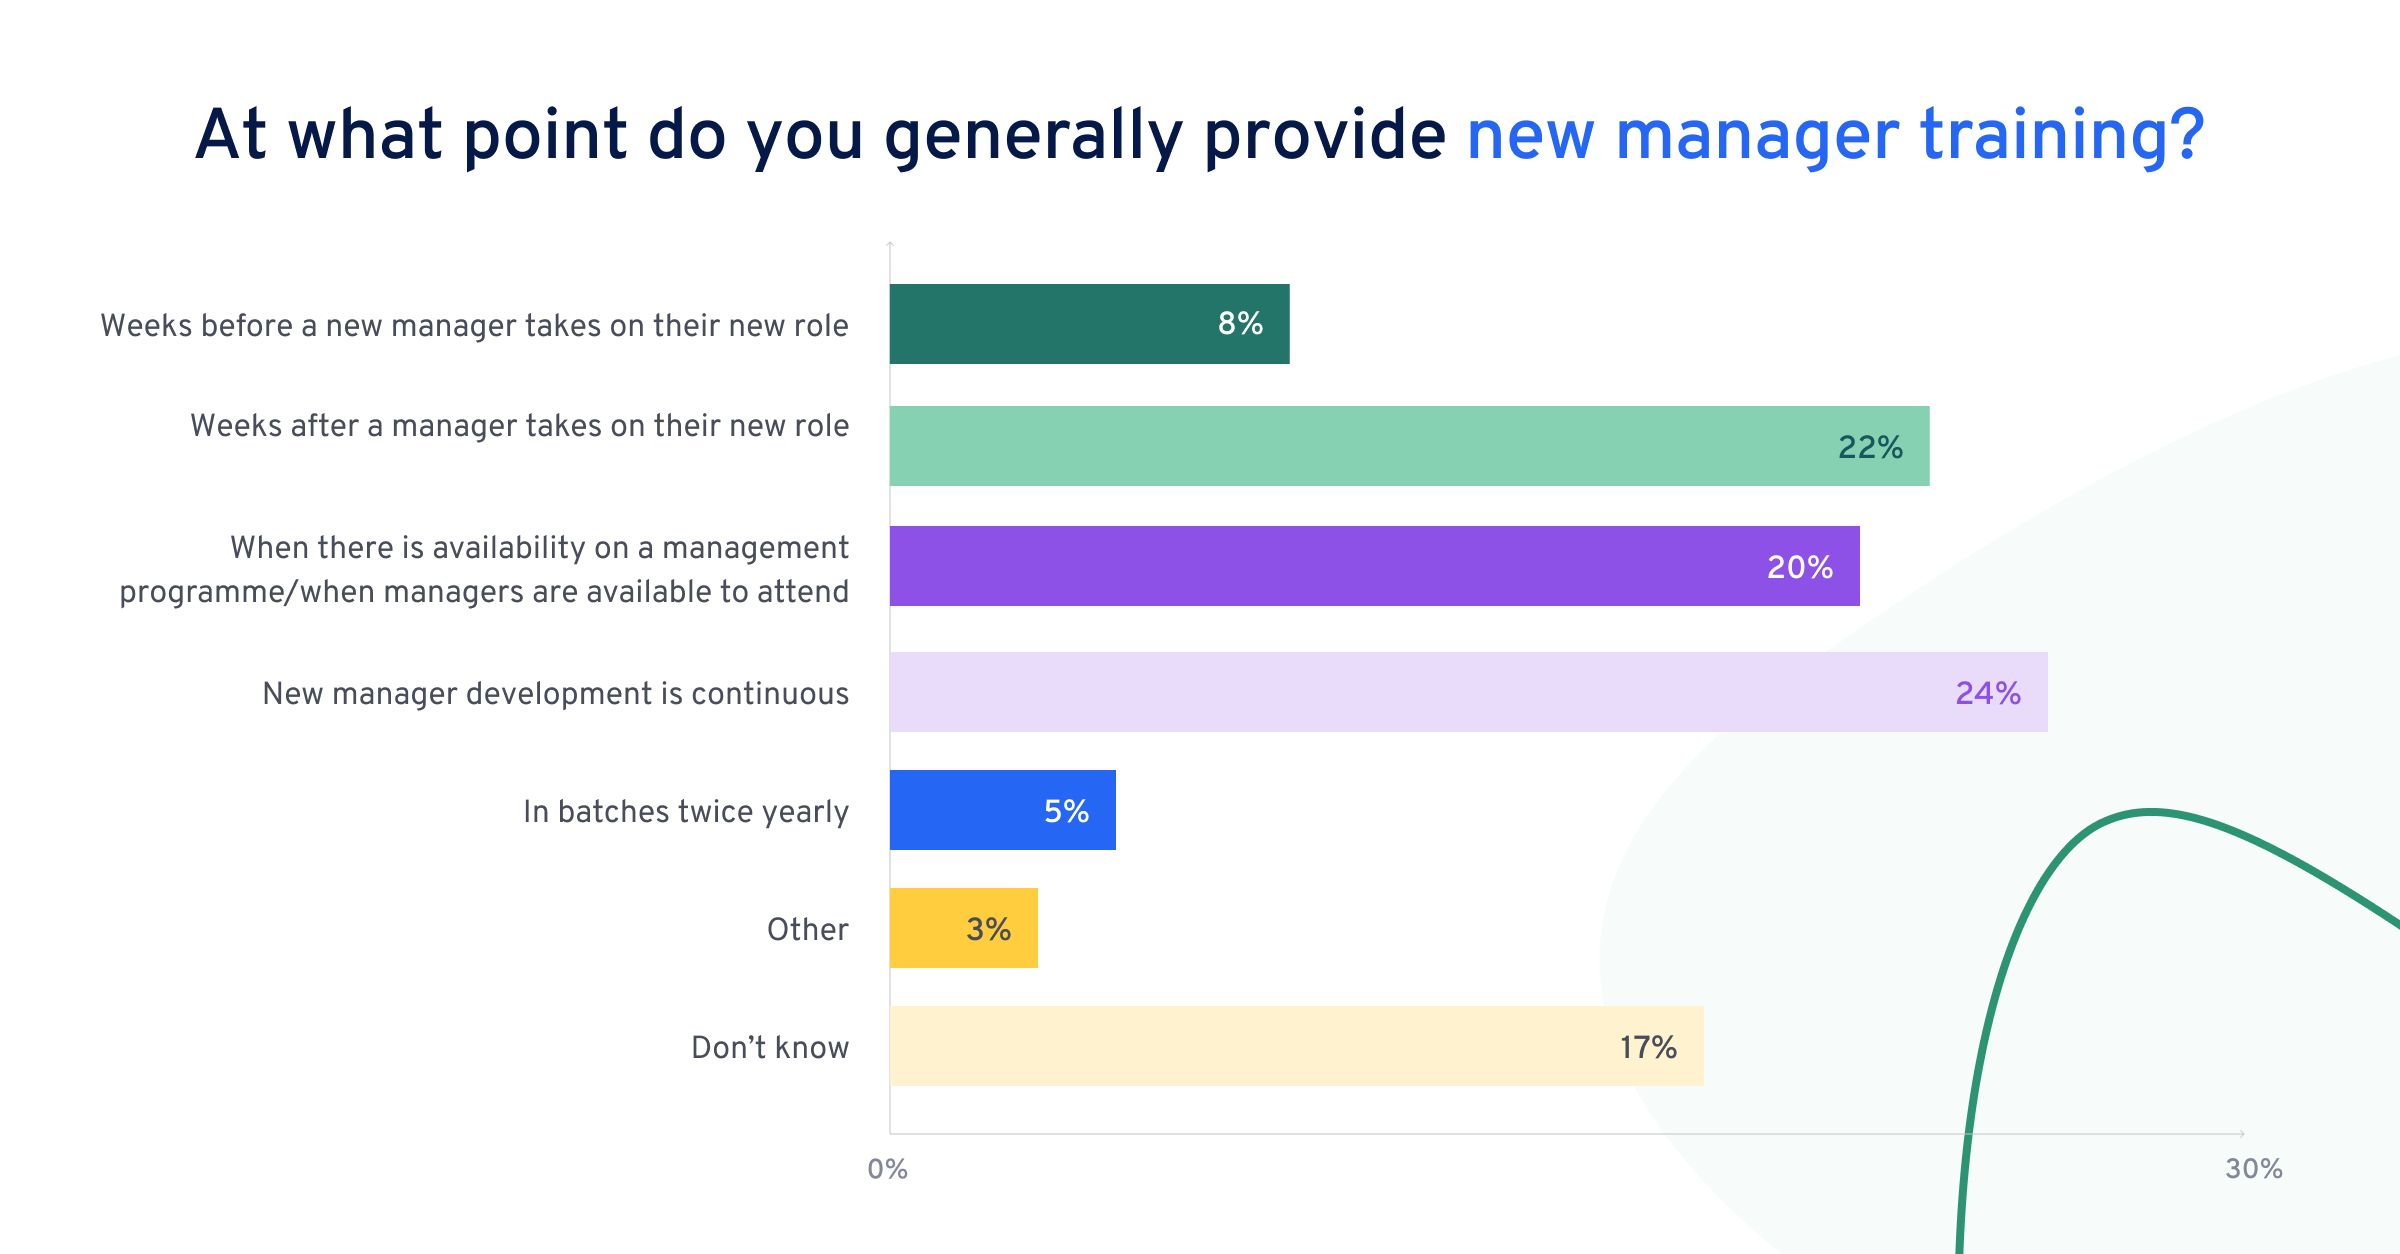 Si 24 % des personnes interrogées expliquent que la formation des nouveaux managers est un processus continu, c'est loin d’être une pratique universelle.